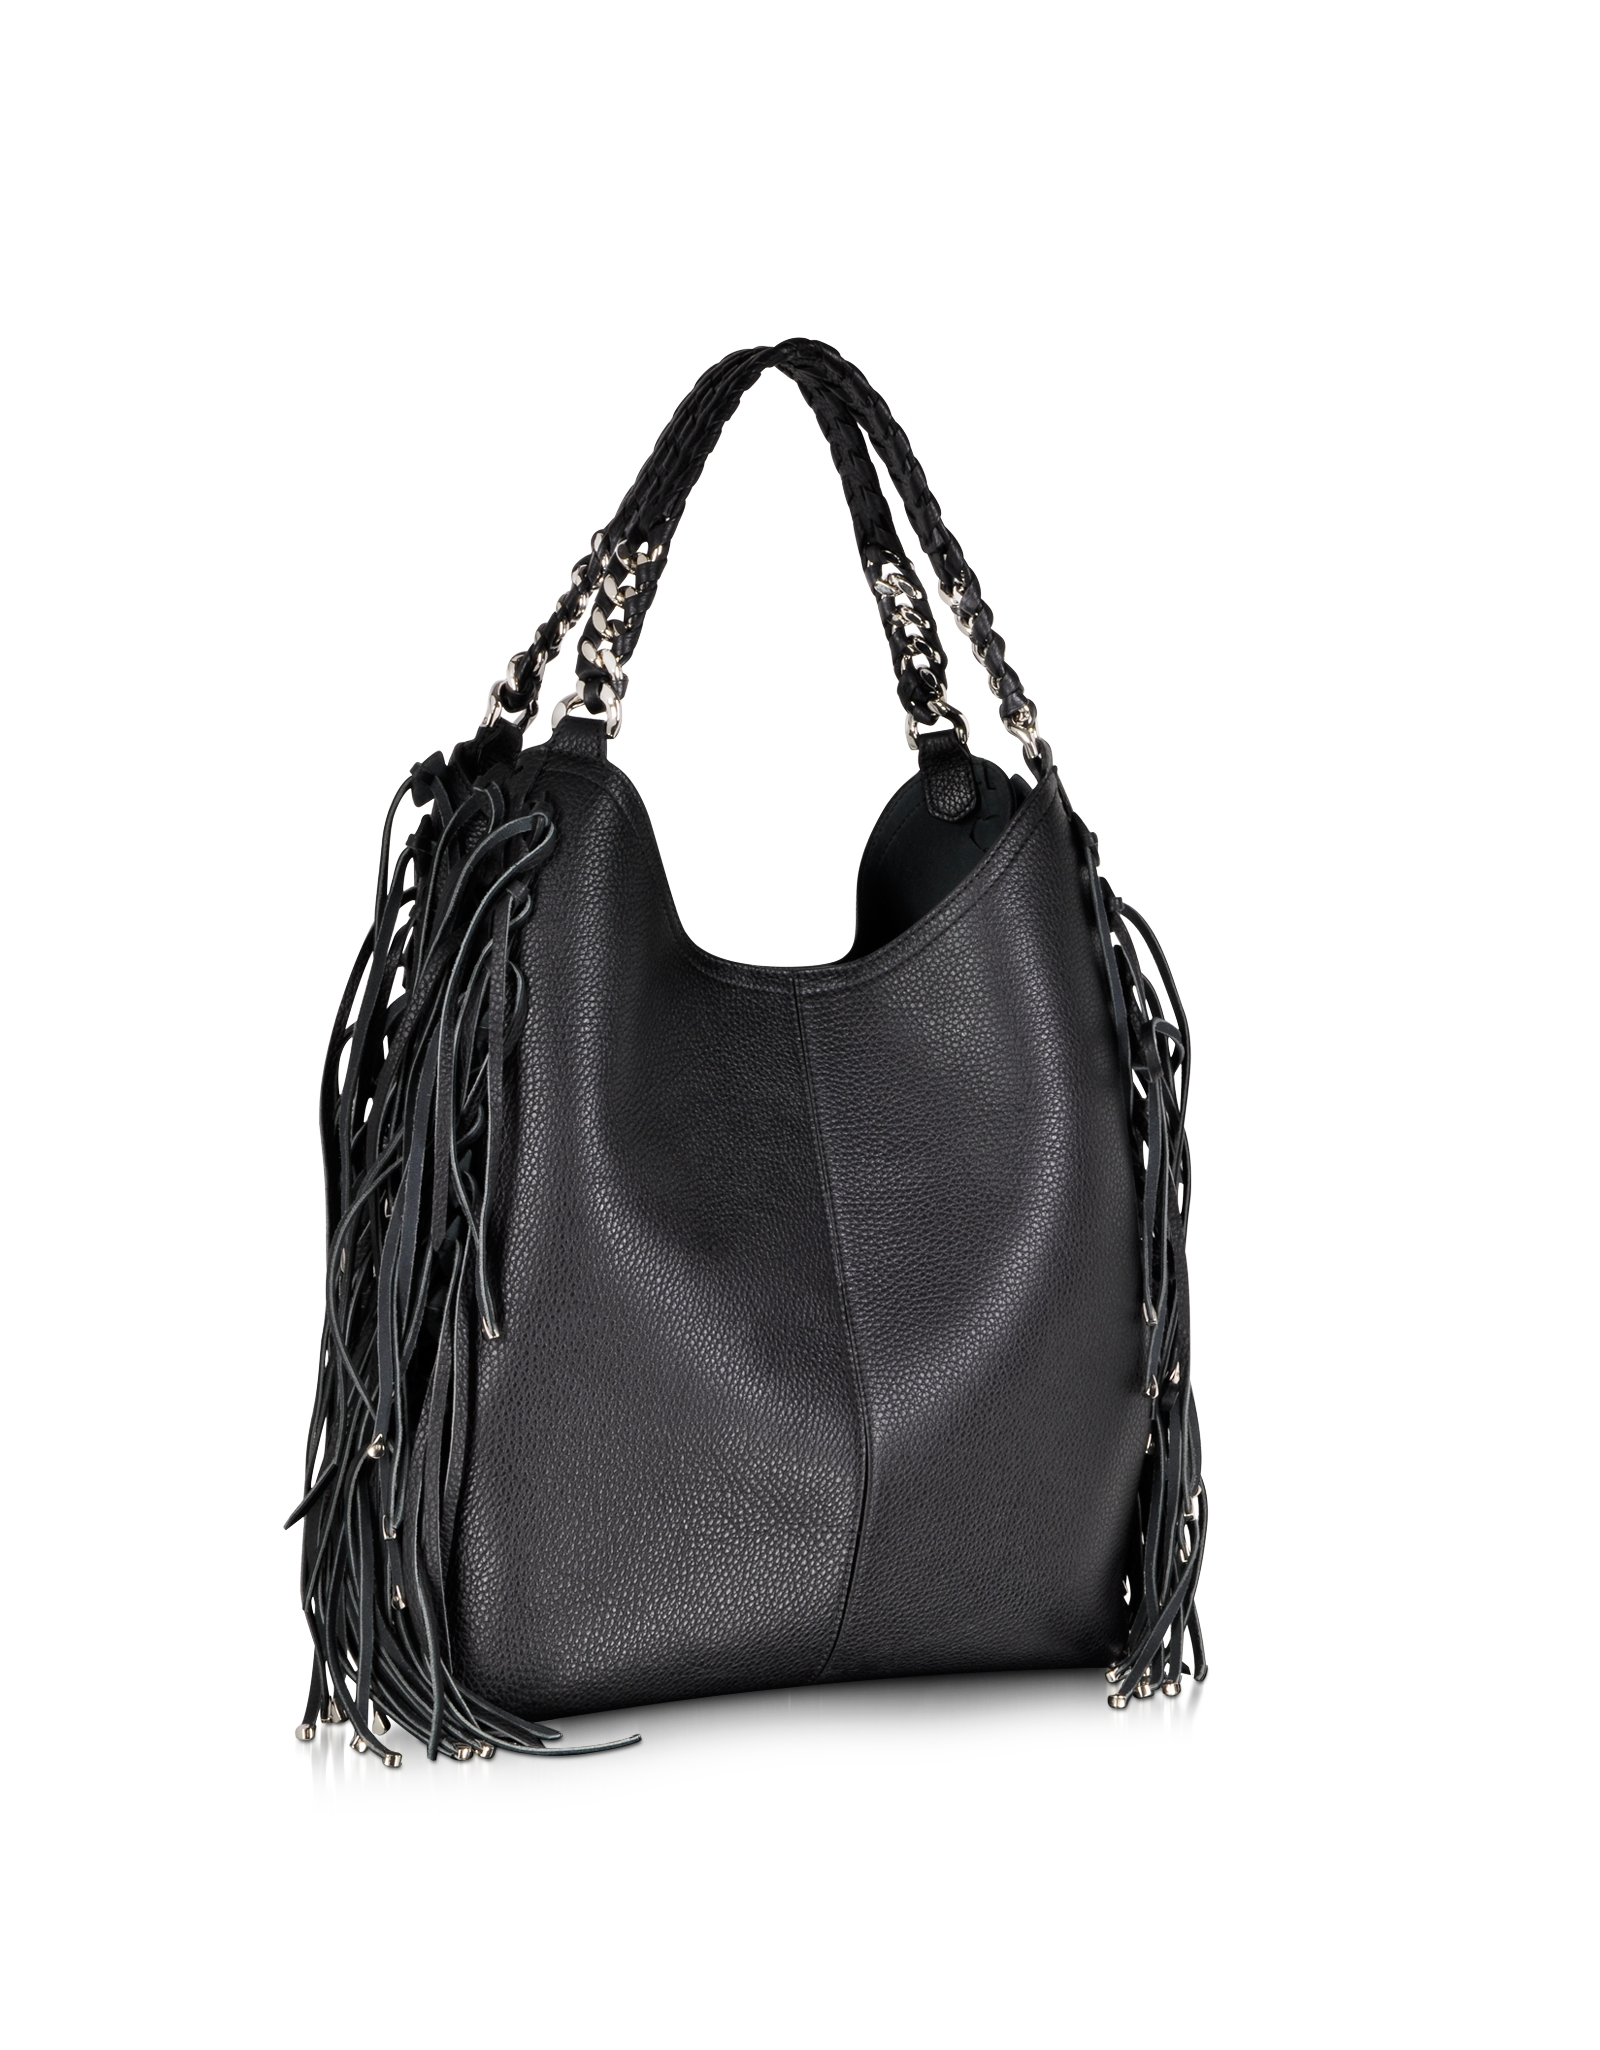 Roberto Cavalli Regina Fringe Black Leather Hobo Bag in Black - Lyst